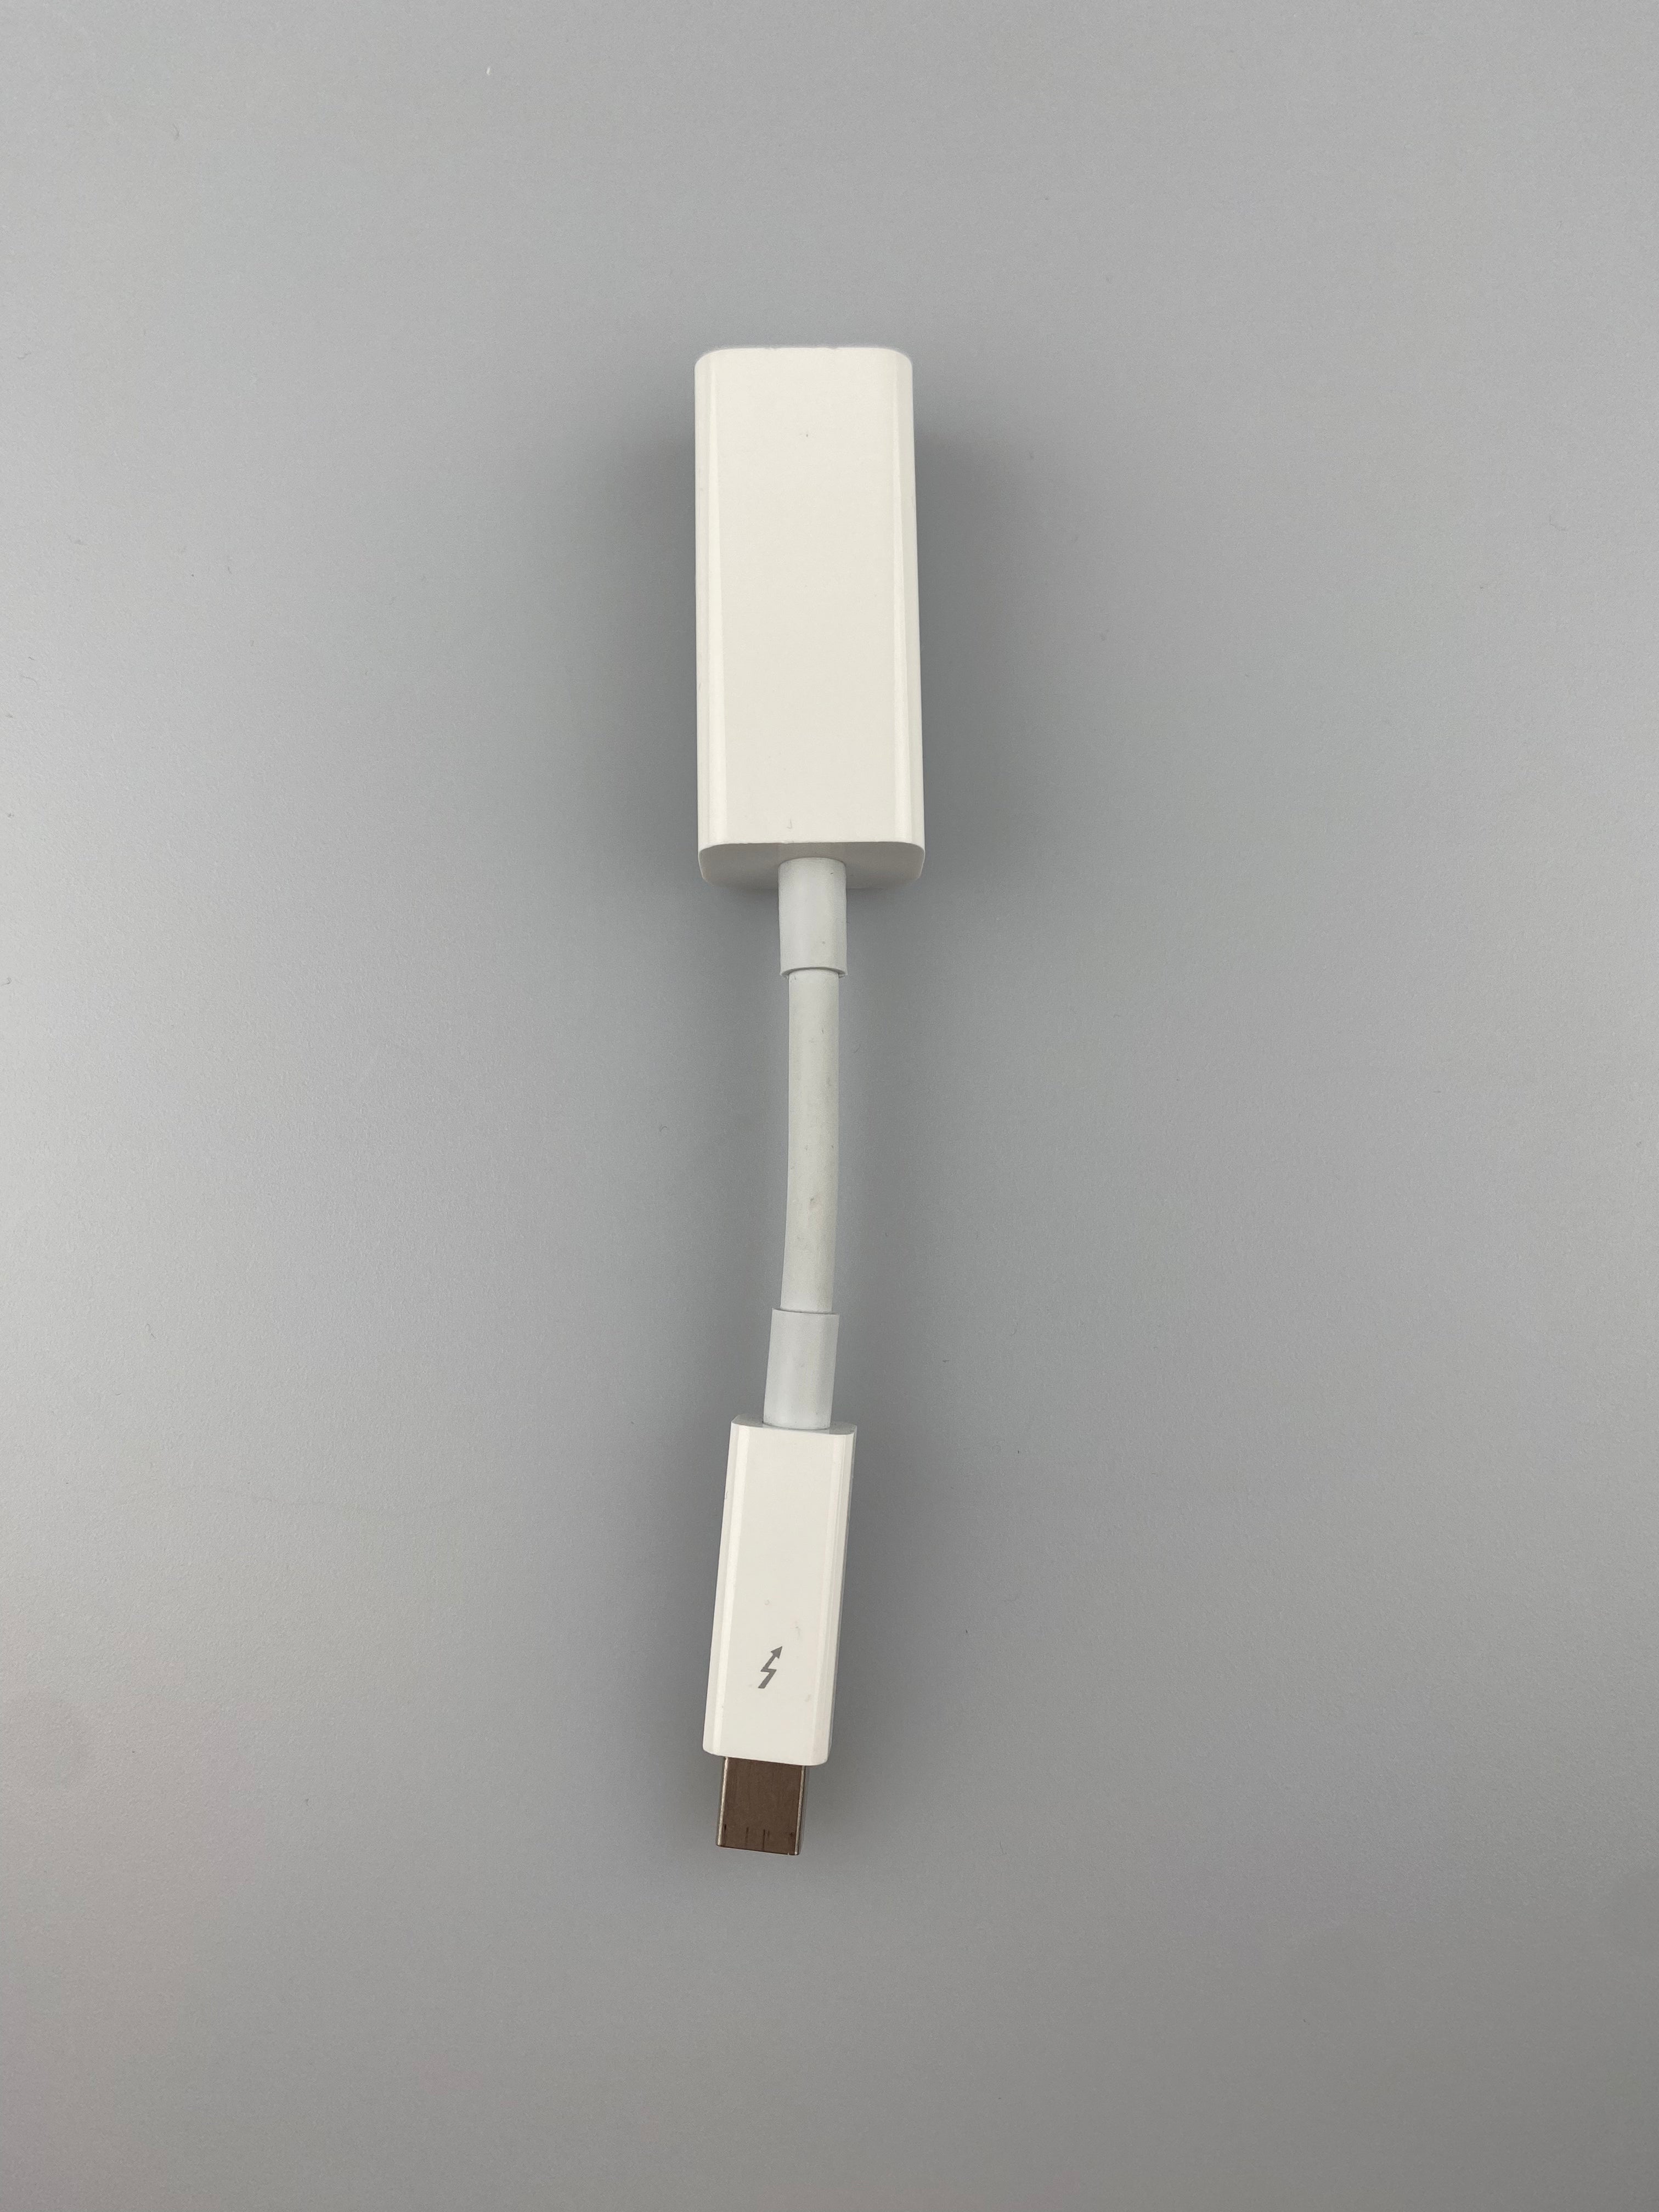 Apple A1433 EMC 2590 Thunderbolt till Gigabit ethernet adapter, vit